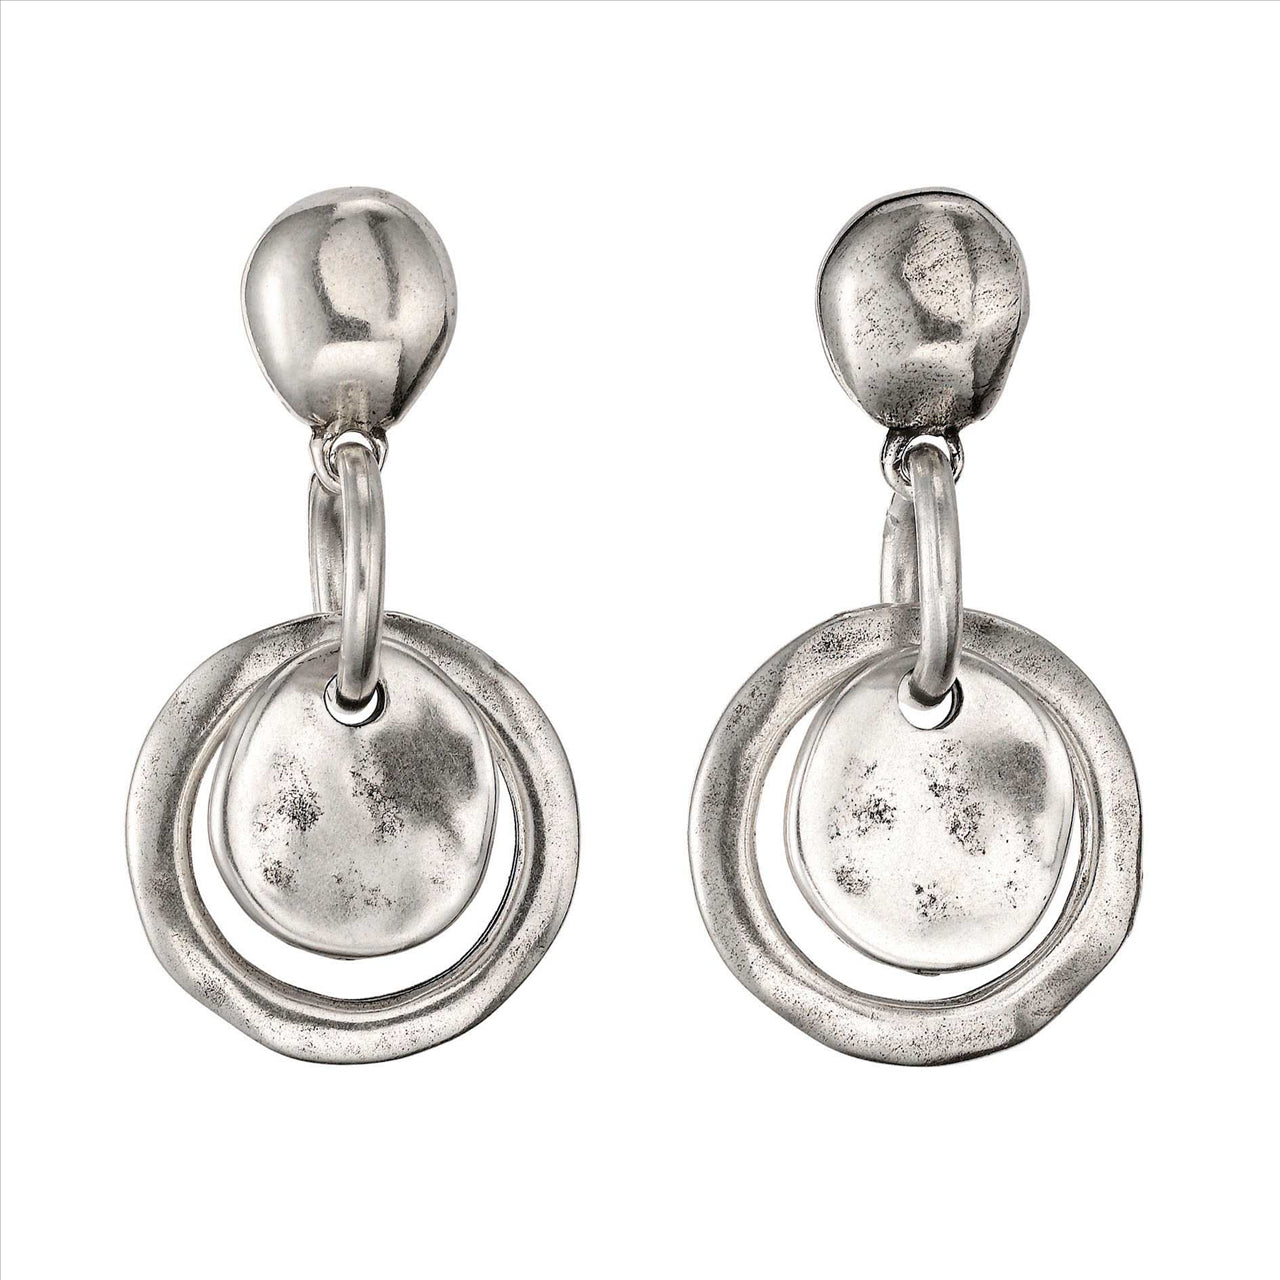 FLAKE EARRINGS, Earrings in metal alloy plated in 15 micron silver.